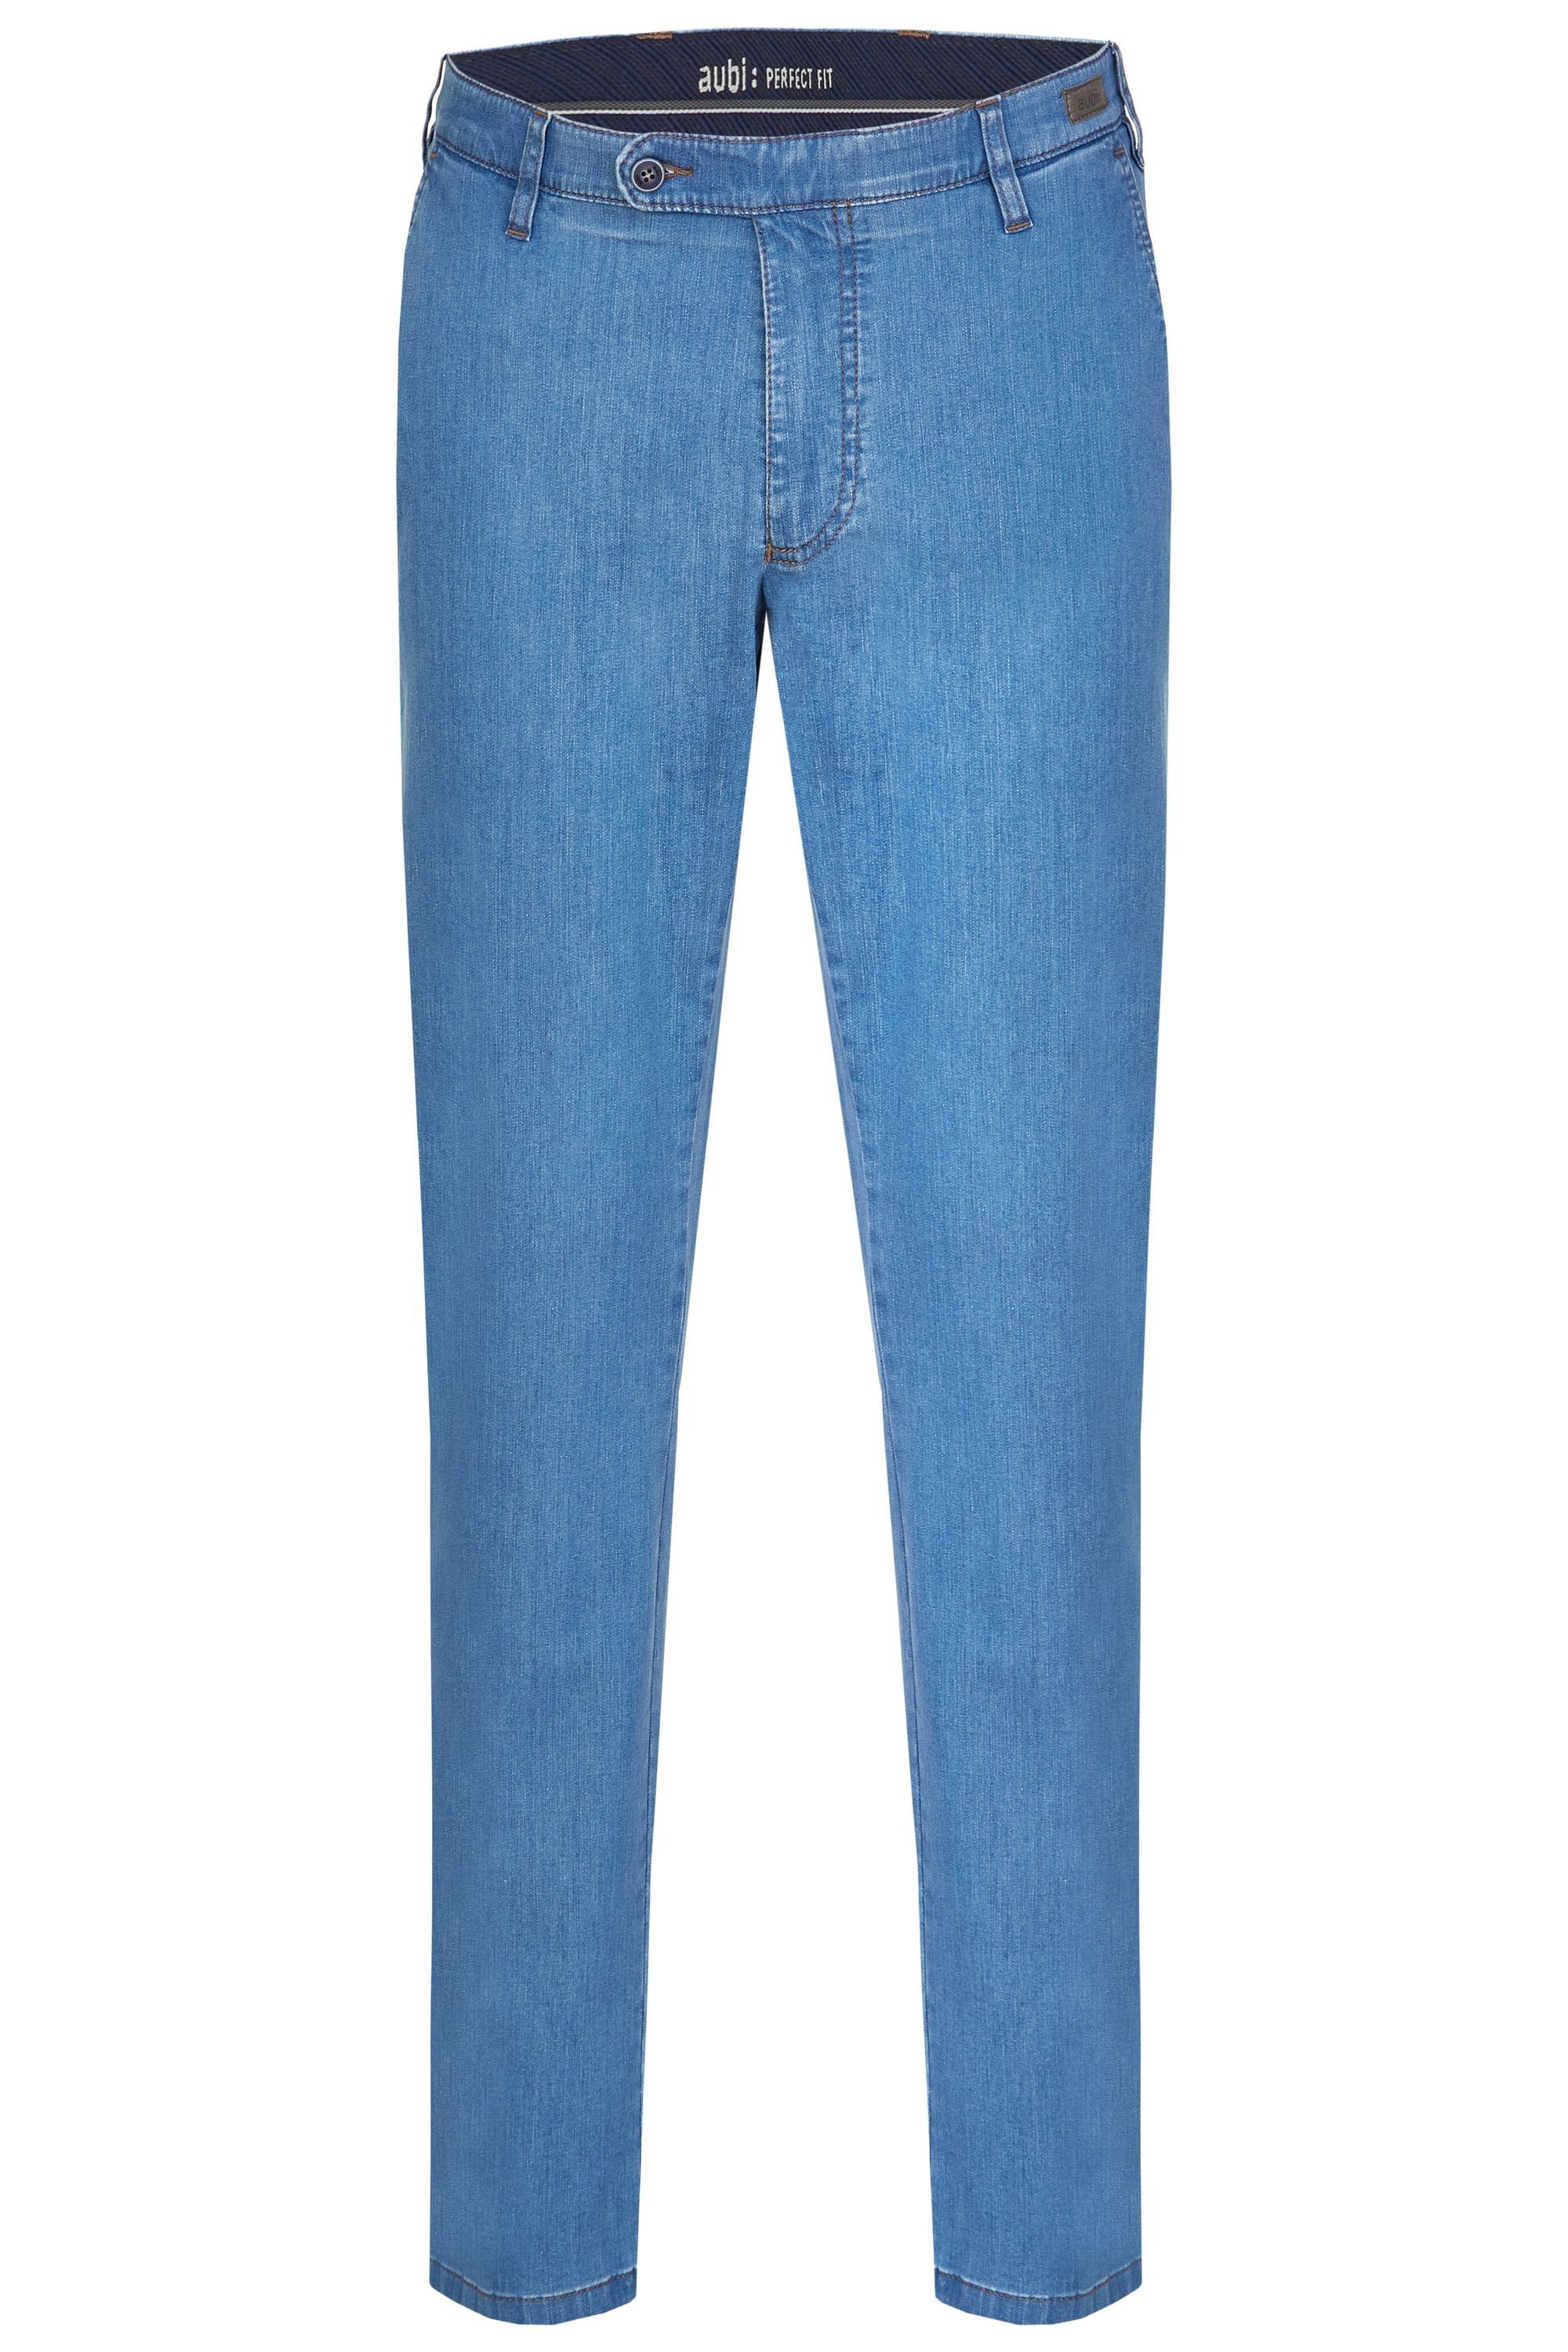 aubi: Bequeme Perfect (43) aubi aus Modell Jeans High Fit Flex Sommer bleached Herren Jeans 526 Hose Baumwolle Stretch